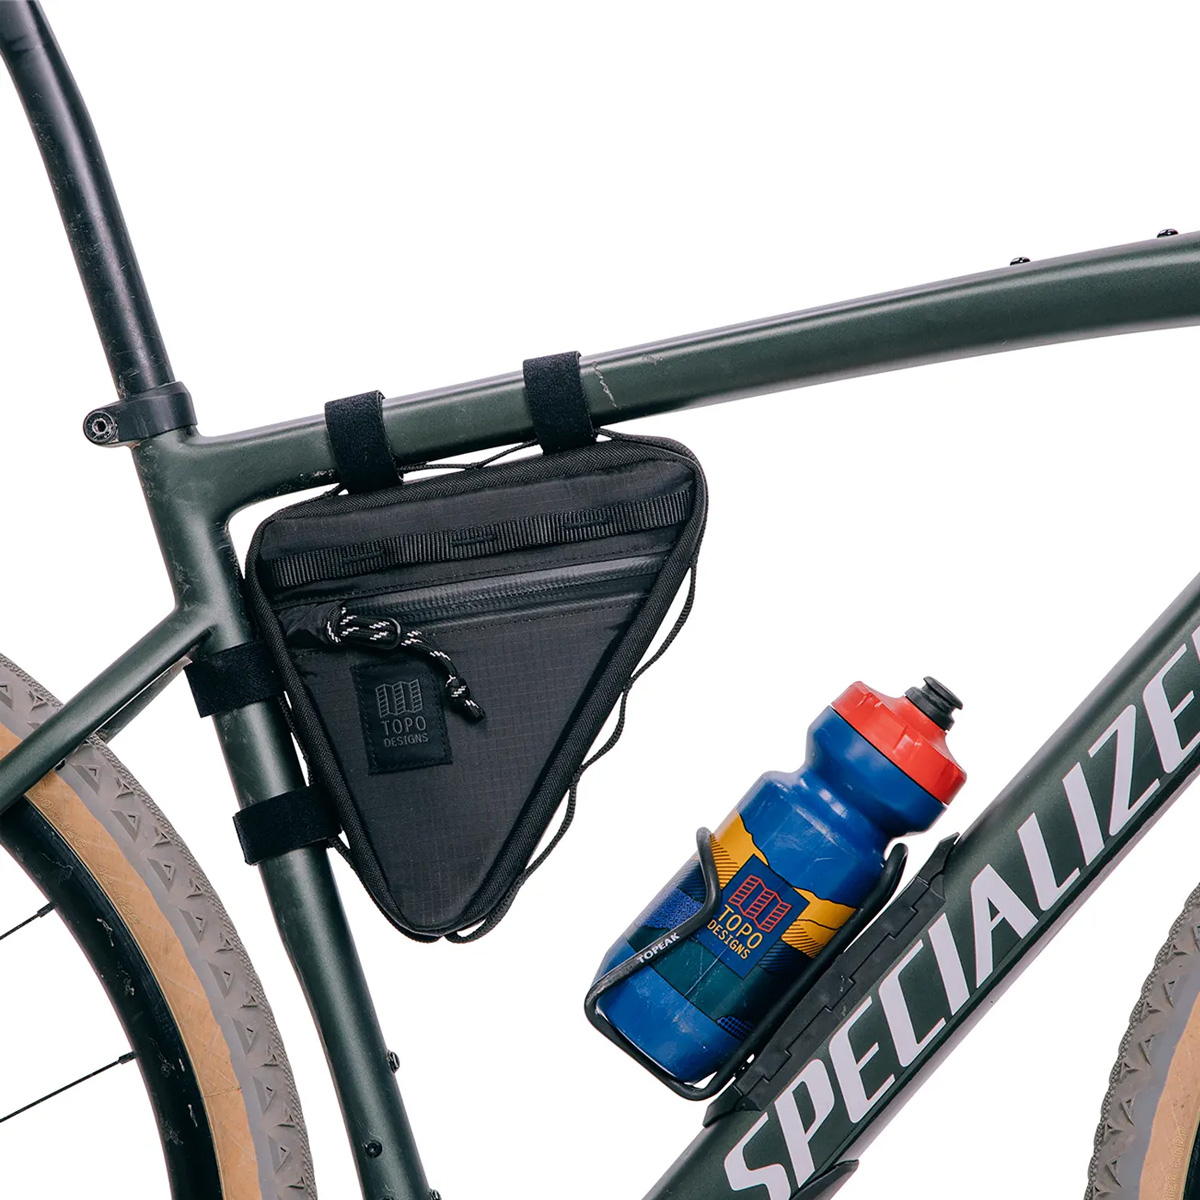 Topo Designs Bike Bag, veelzijdige tas om aan de stuurstang van je fiets te bevestigen.